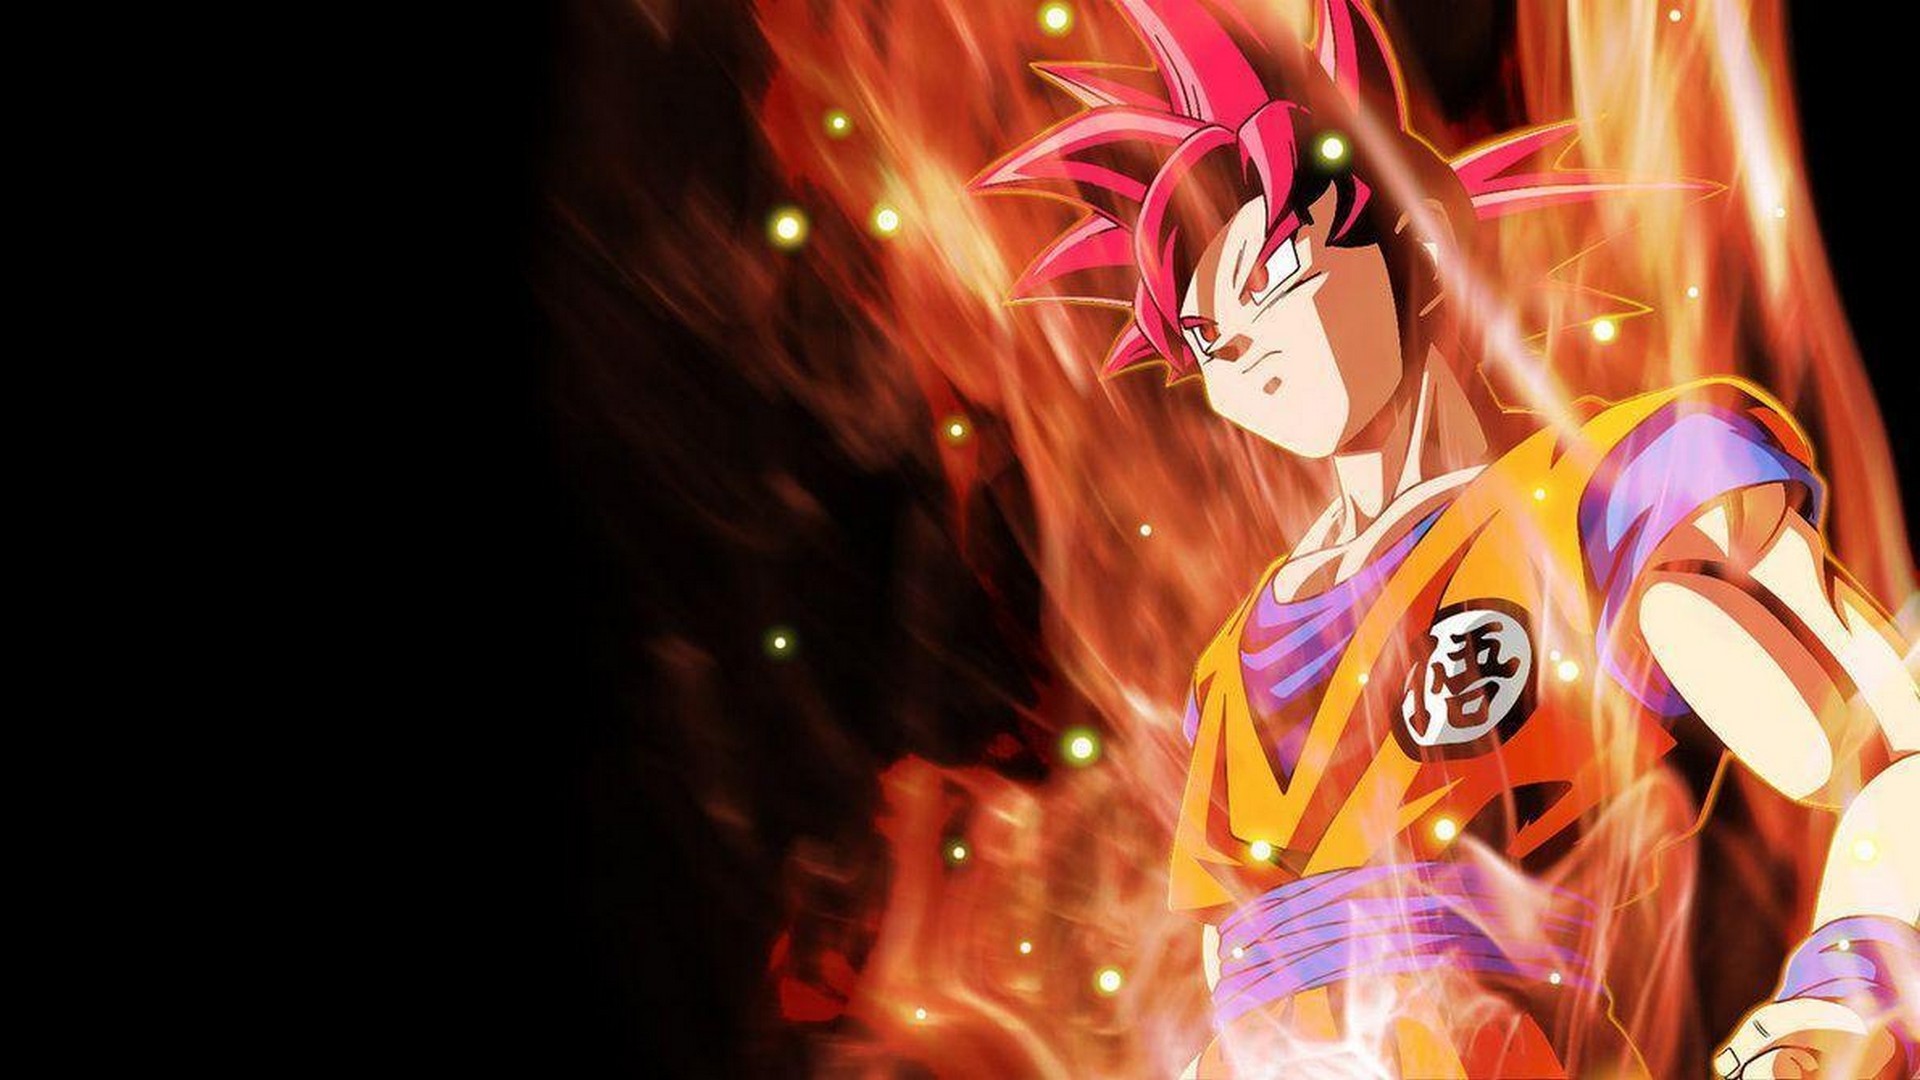 Wallpapers Goku Super Saiyan God With Image Resolution - Goku Super Saiyan God - HD Wallpaper 